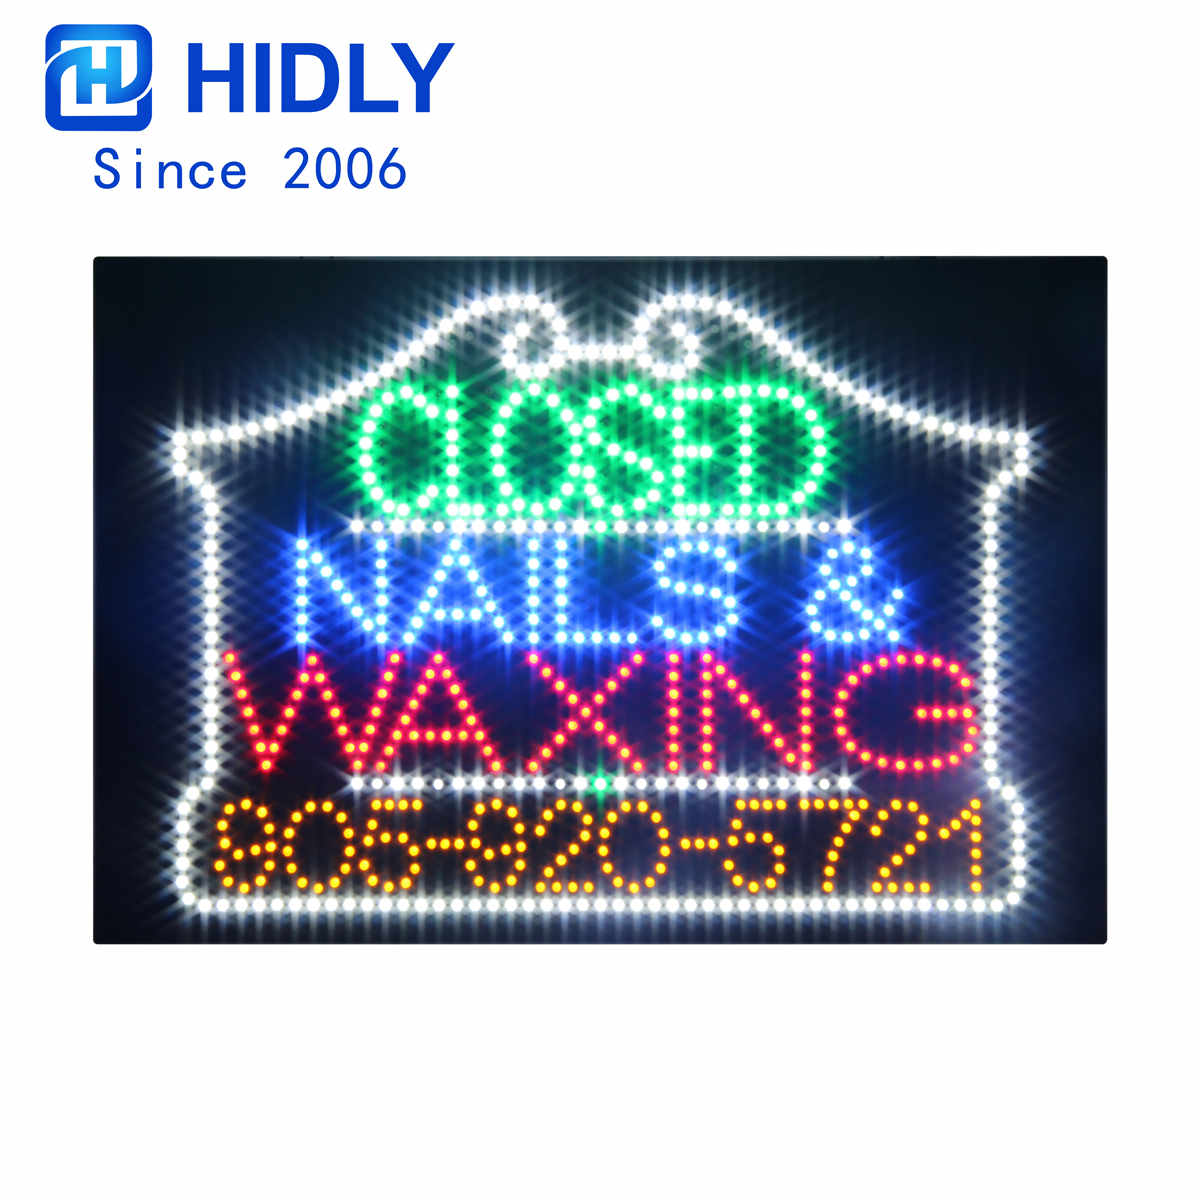 nails waxing large sign